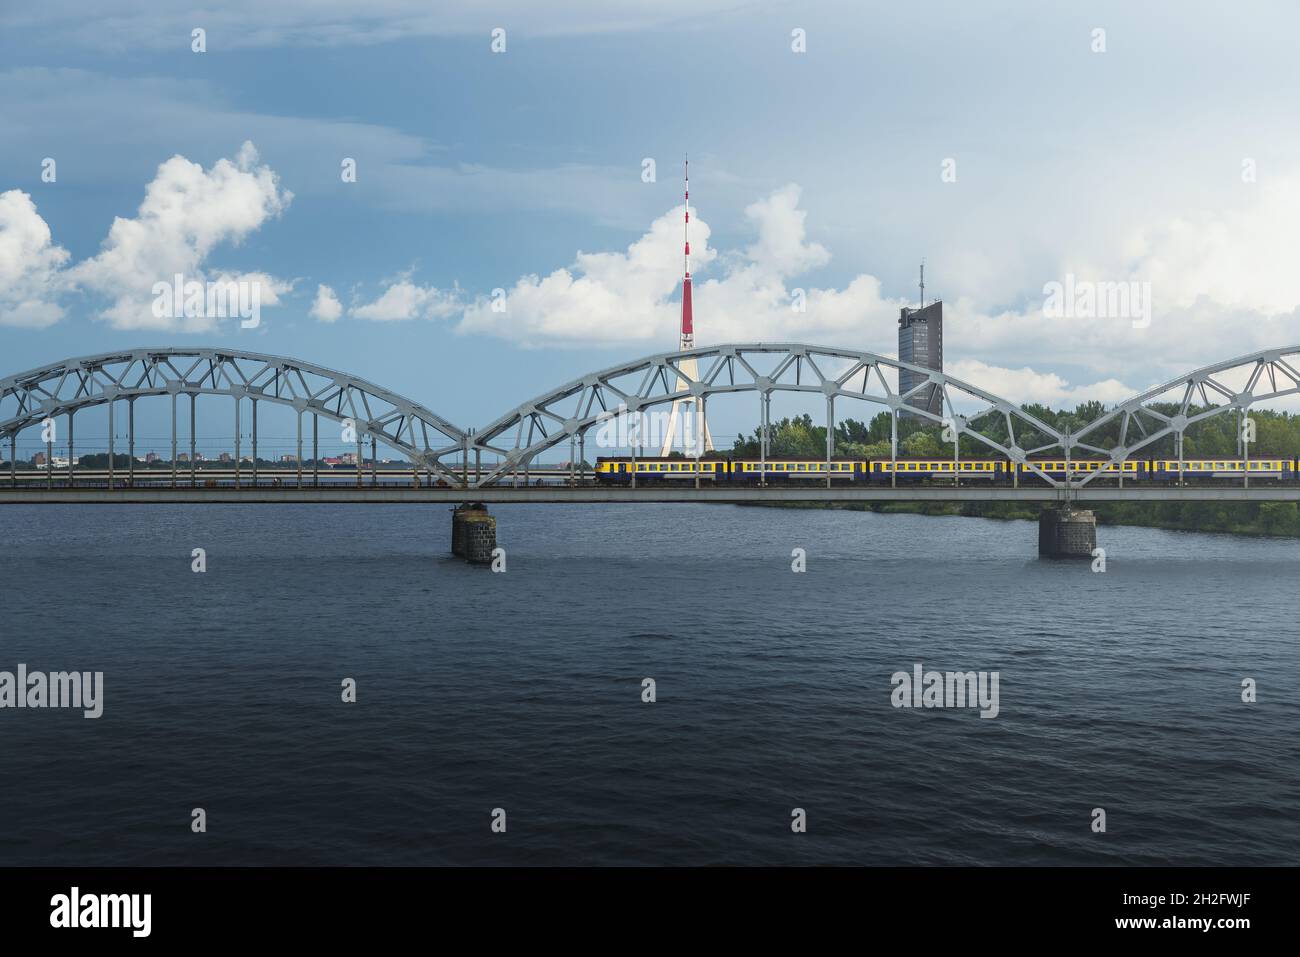 Pont ferroviaire et tour de radio et de télévision de Riga - Riga, Lettonie Banque D'Images